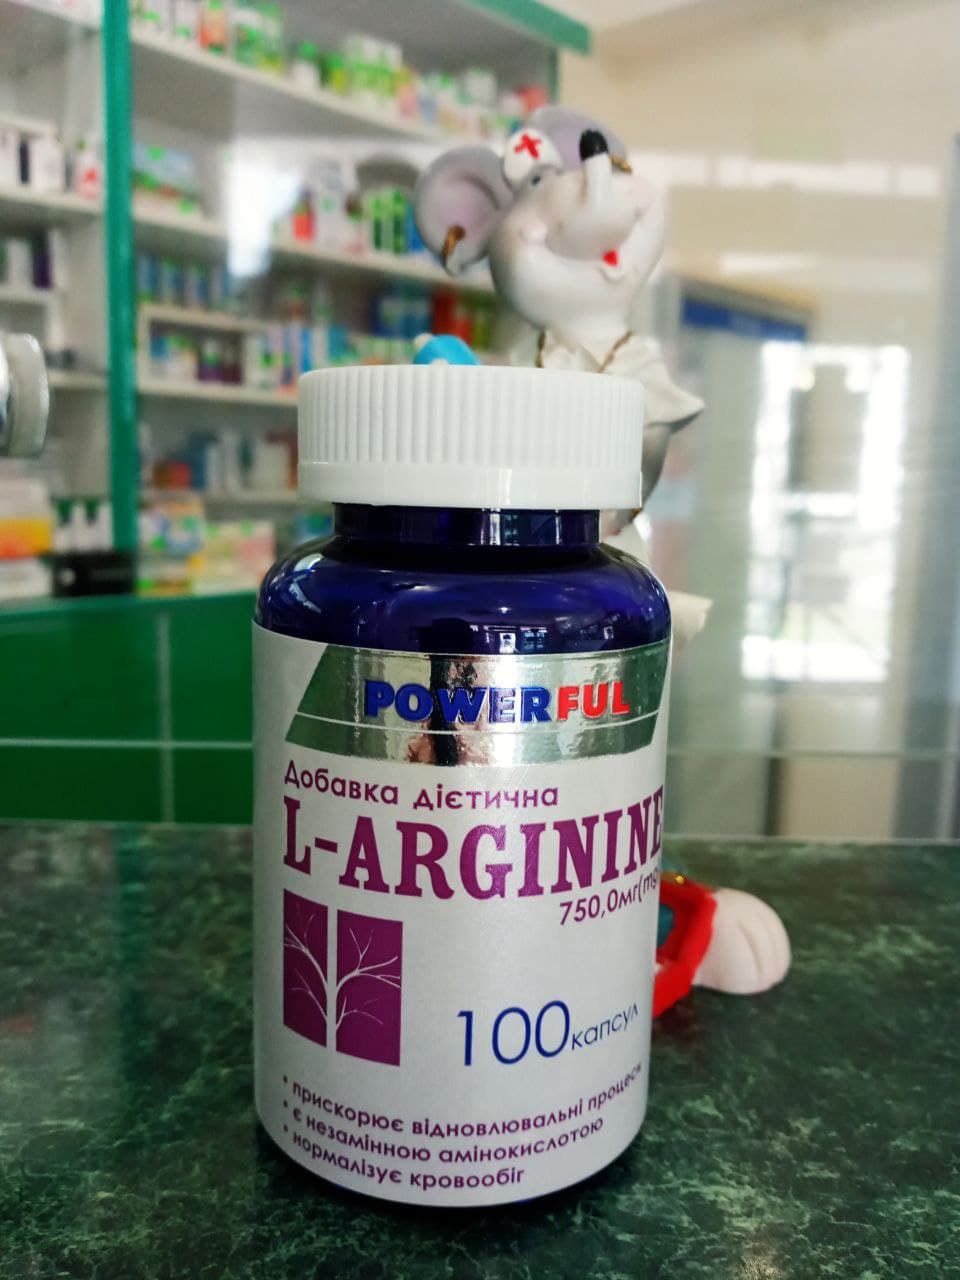 Покупаете L-аргинин как важнейшую аминокислоту в физических нагрузках, спортивных тренировках, сохранение эректильной функции у мужчин, в заболевания сердечно-сосудистых